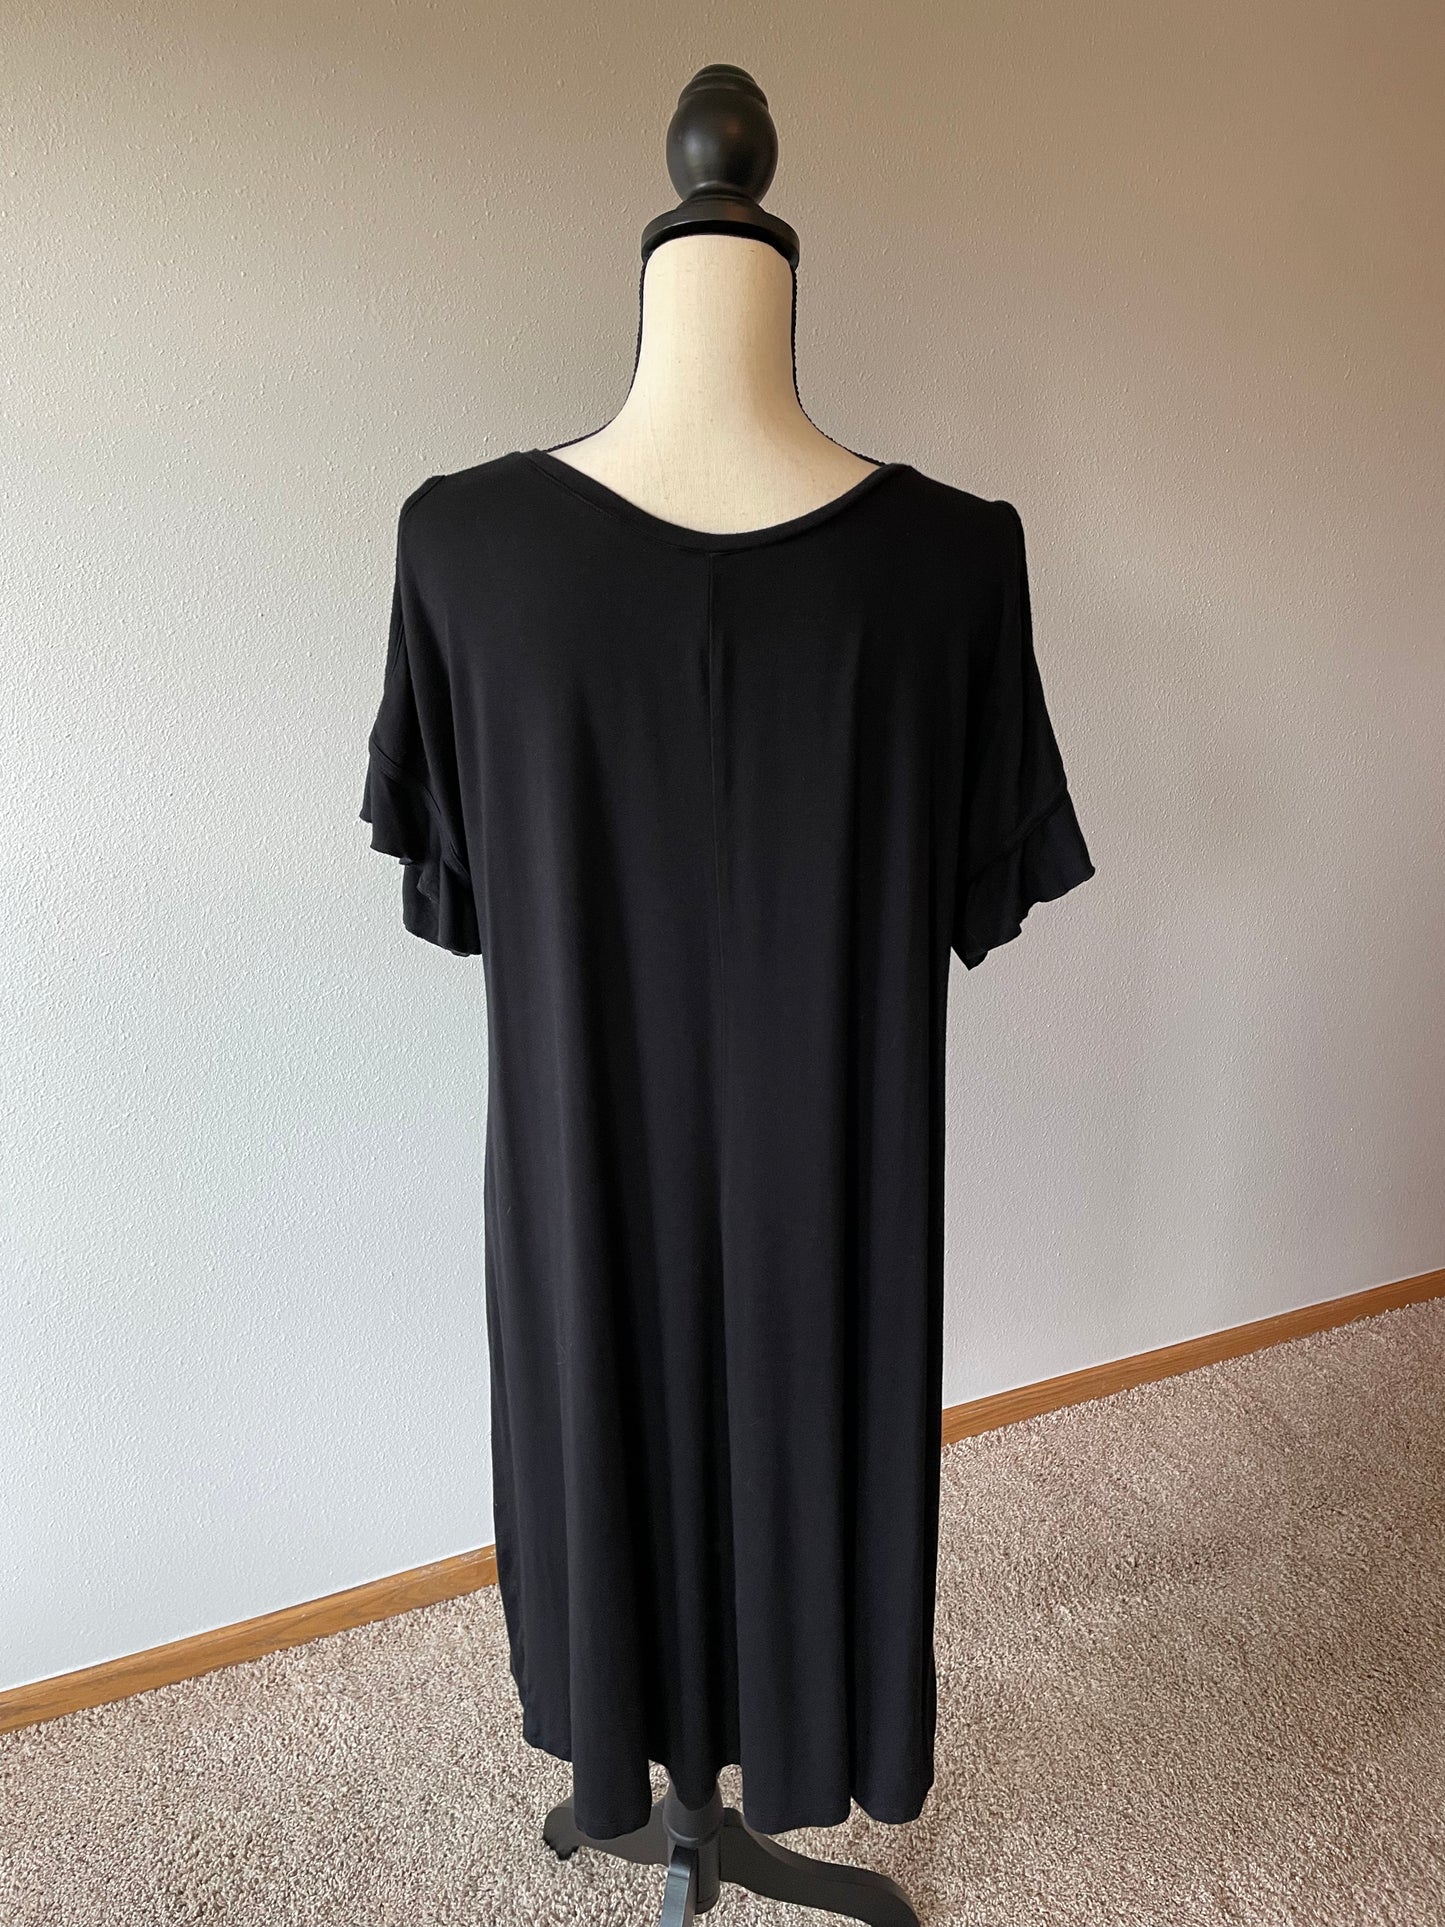 Est 1946 Women's Black Dress (14/16W)